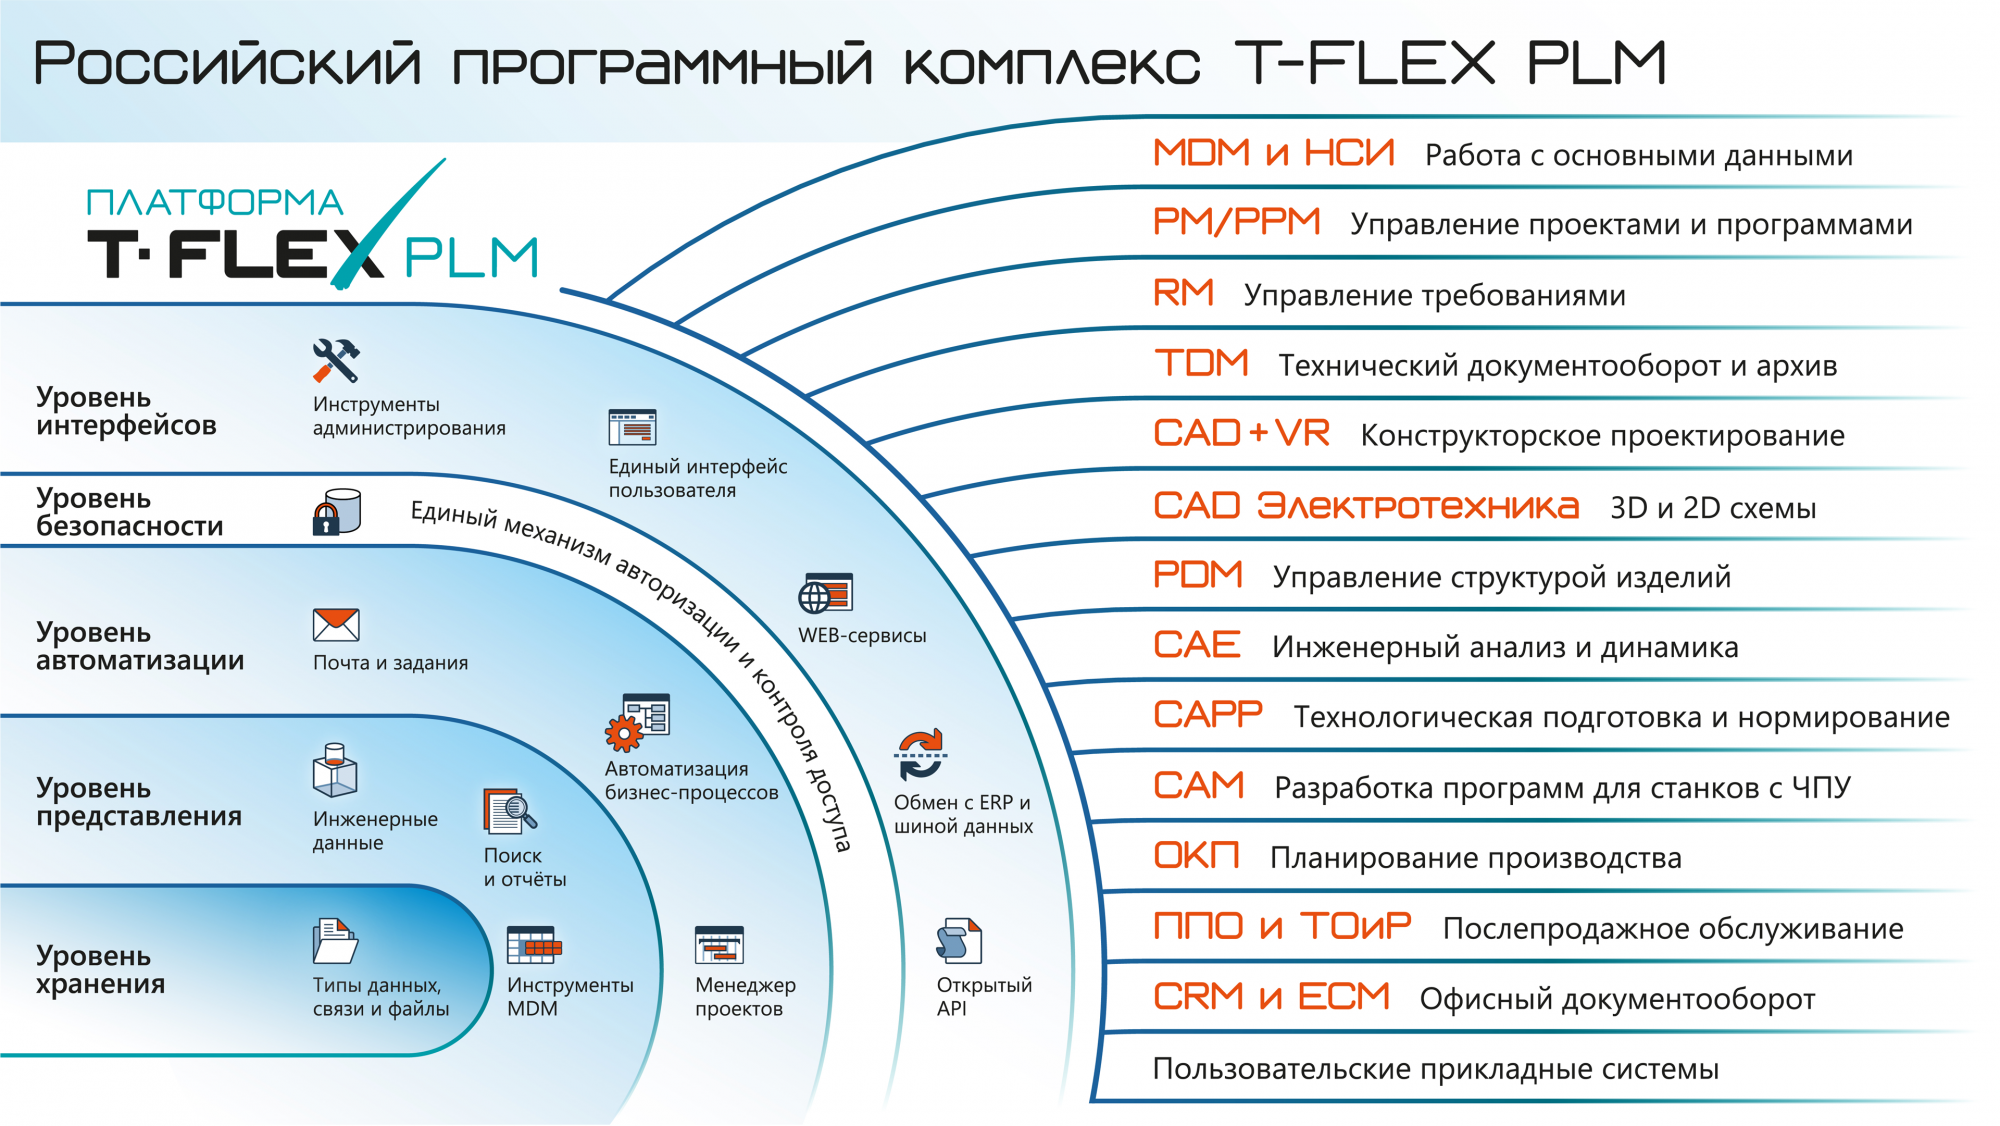   T-FLEX PLM